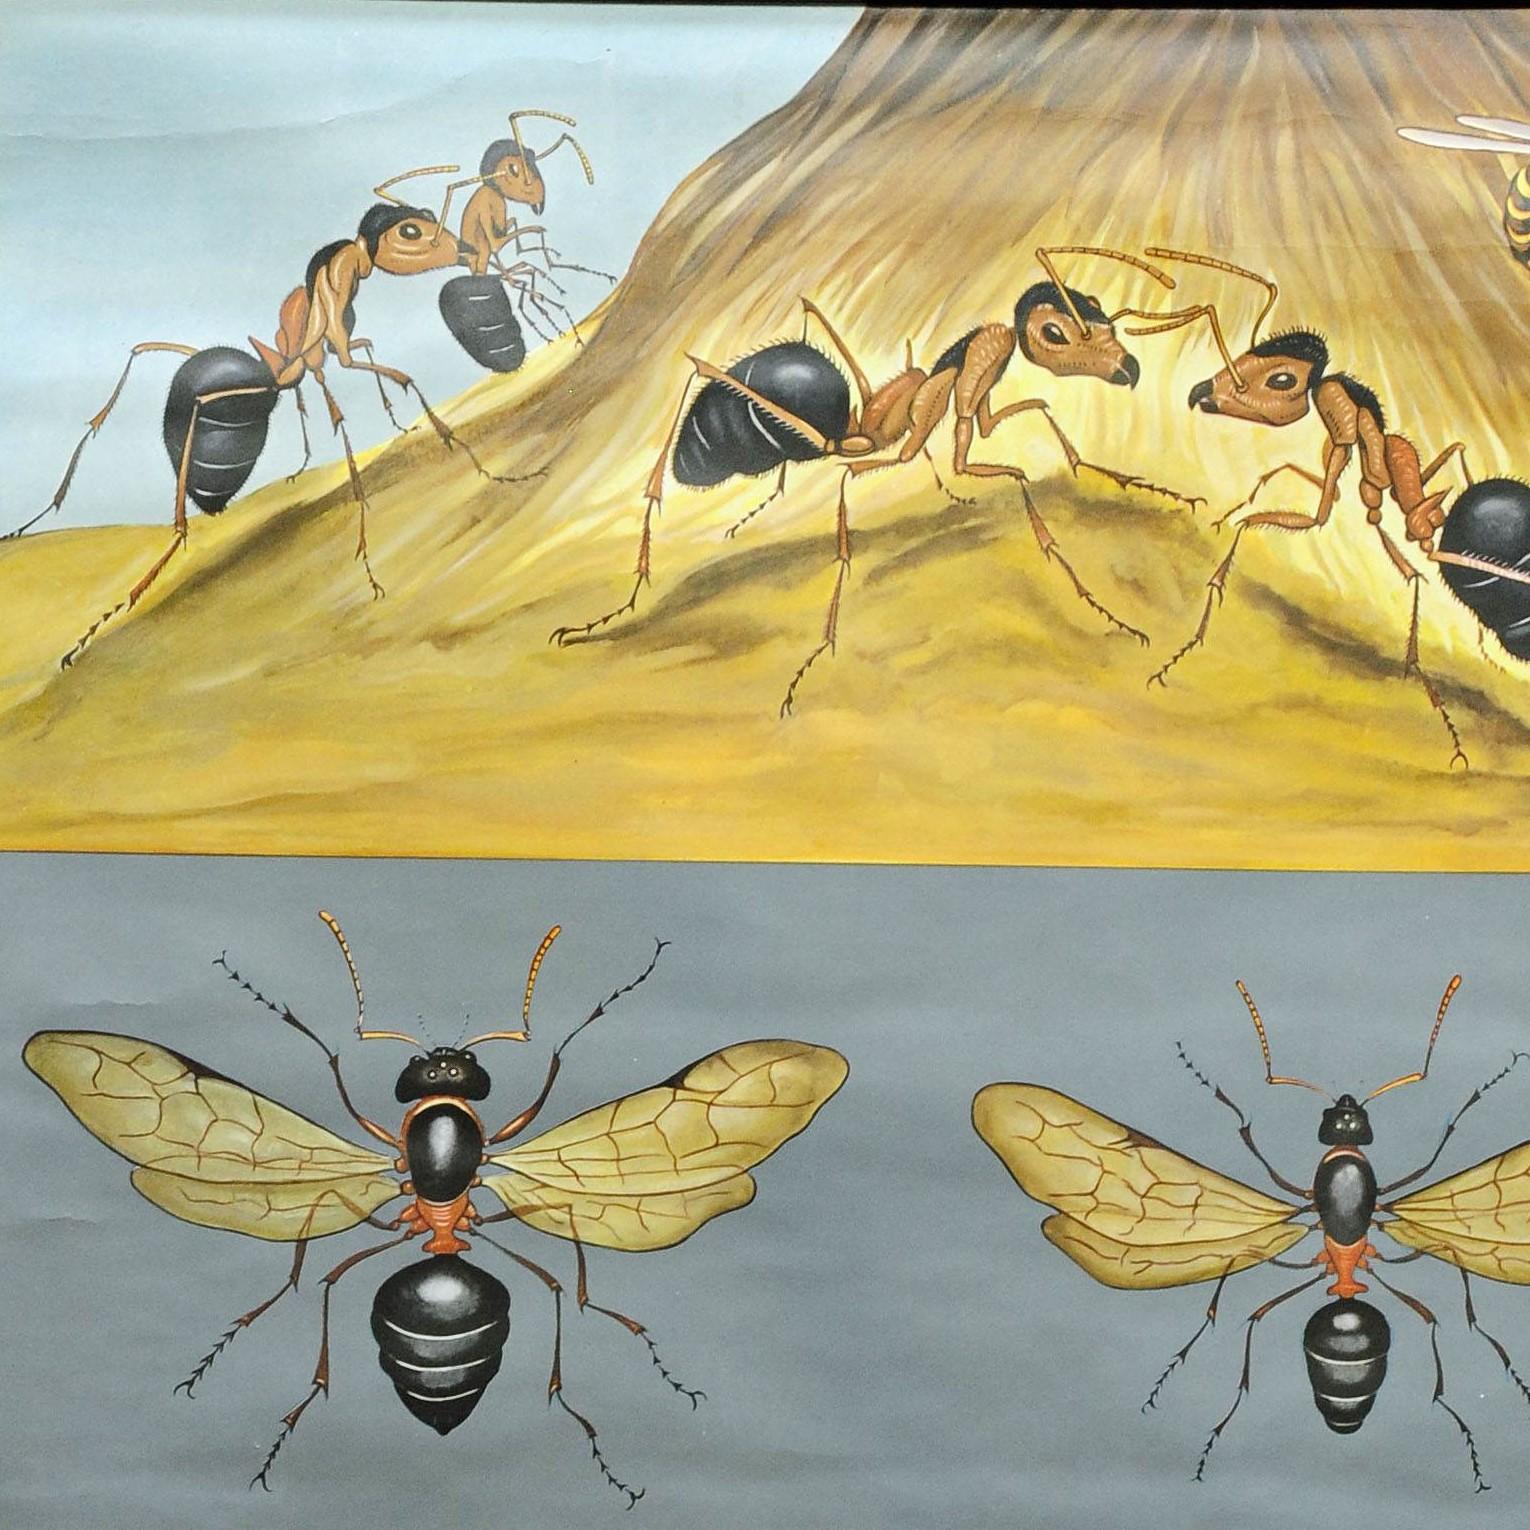 Un fantastique gros plan de Koch Quentell représentant les fourmis rouges des bois sur le sol et différents détails de son corps. Utilisé comme matériel pédagogique dans les écoles allemandes. Impression colorée sur papier renforcé par de la toile.